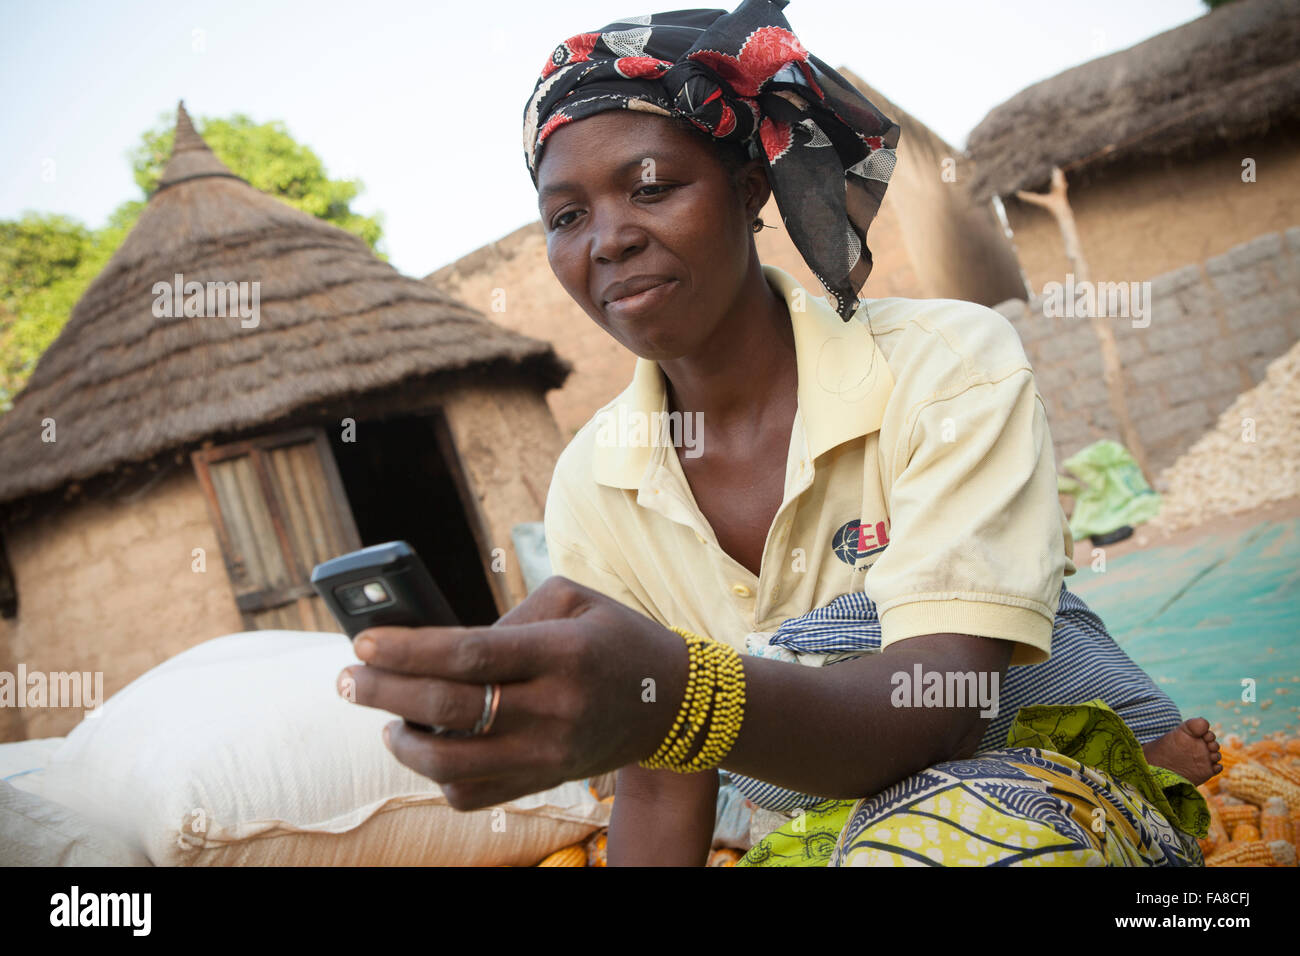 Un agriculteur utilise la technologie de la téléphonie mobile pour comparer les prix dans divers marchés dans Banfora Ministère, Burkina Faso, Afrique de l'Ouest. Banque D'Images